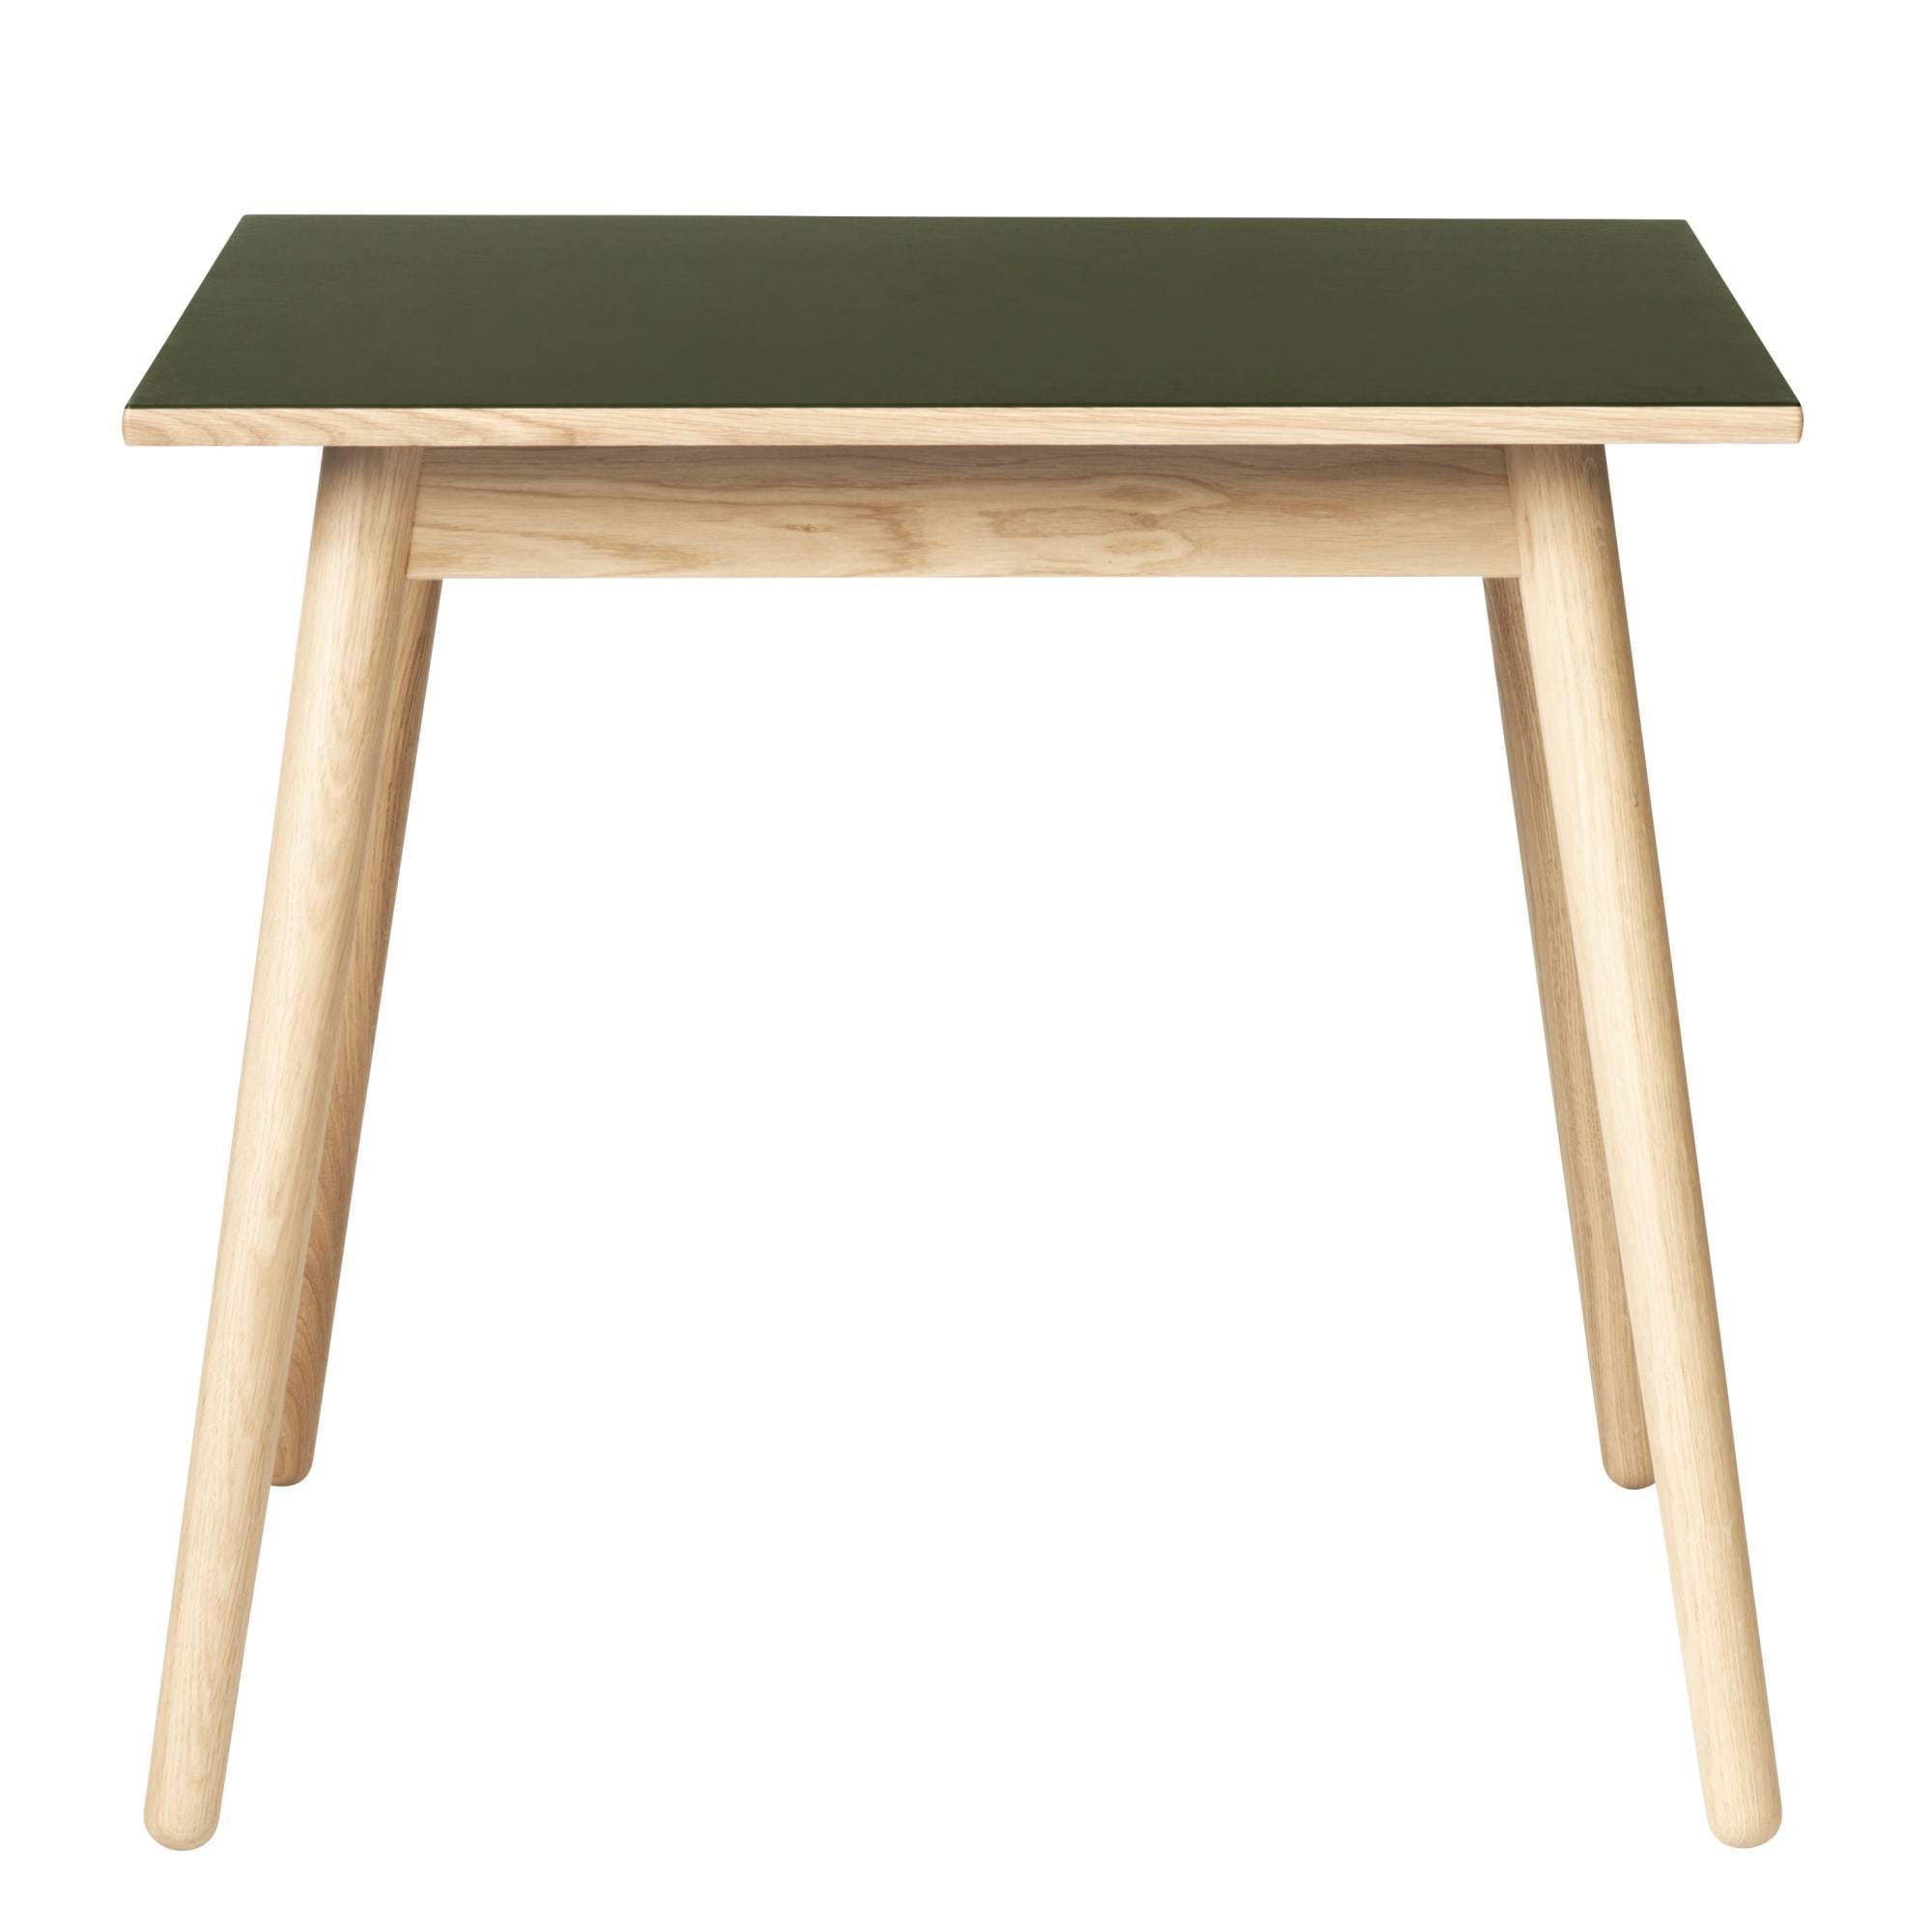 FDB Møbler C35 Esstisch Eiche, Olive Linoleum Table, 82x82 cm